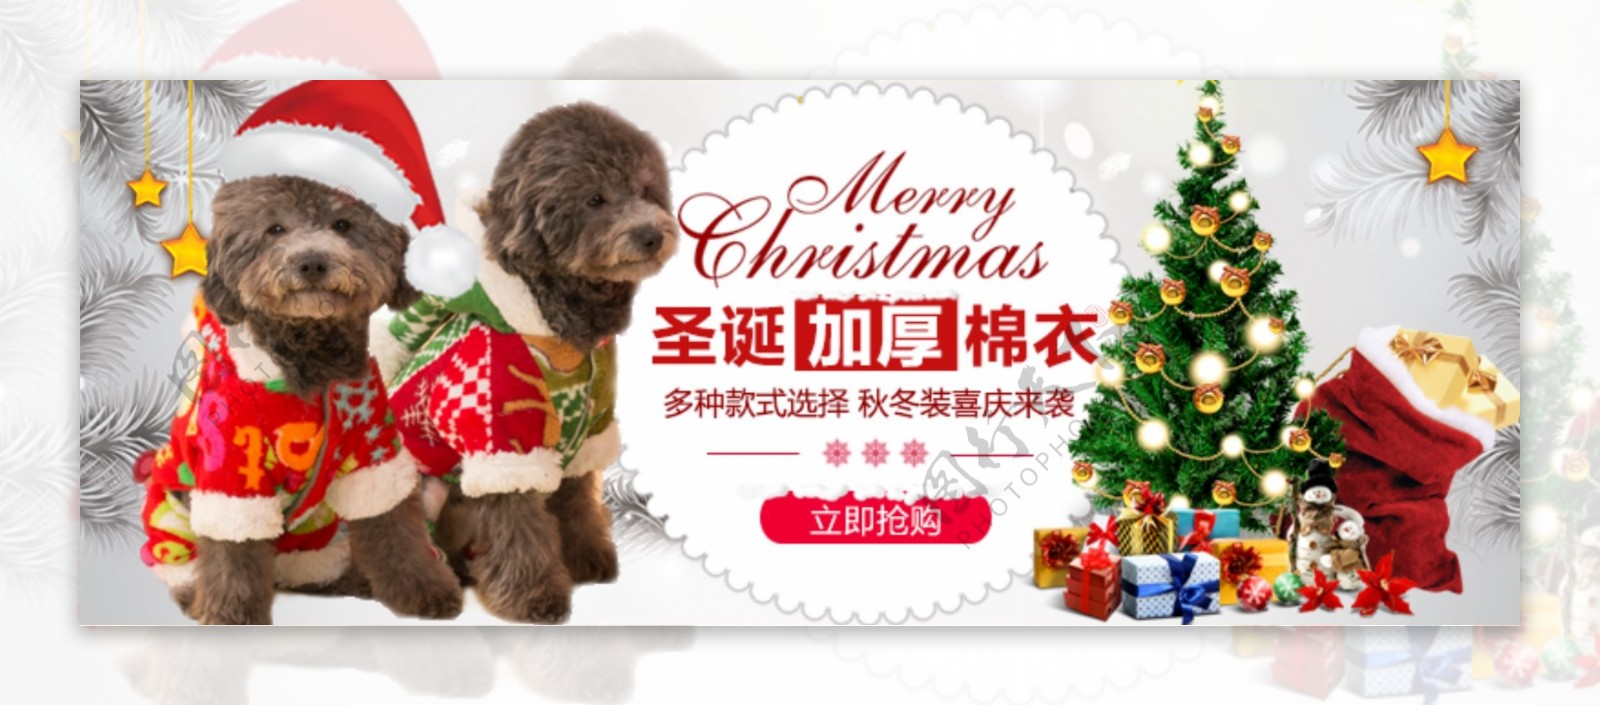 圣诞节海报狗狗圣诞节